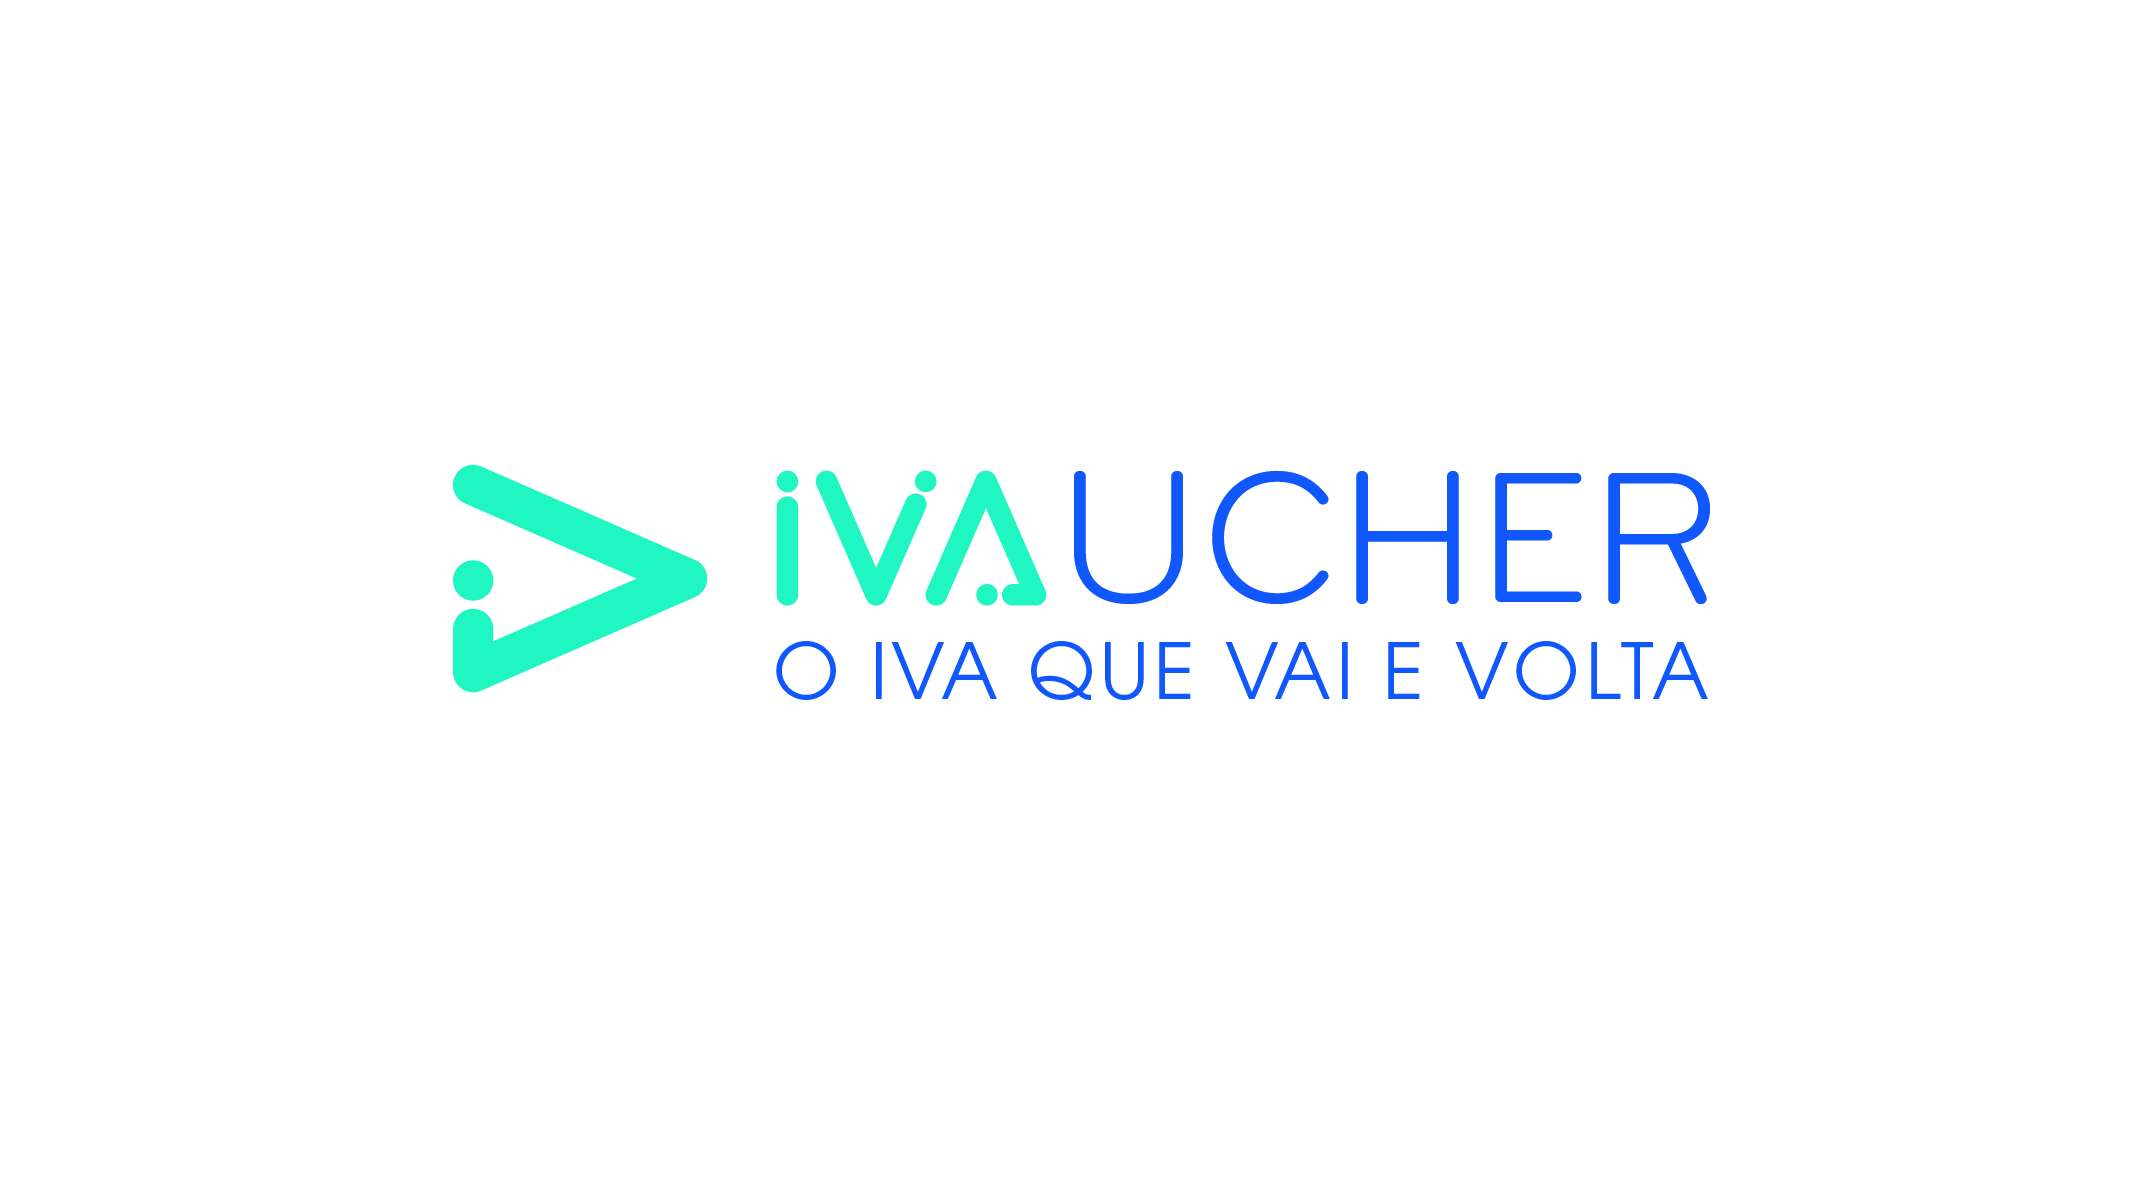 IVAucher